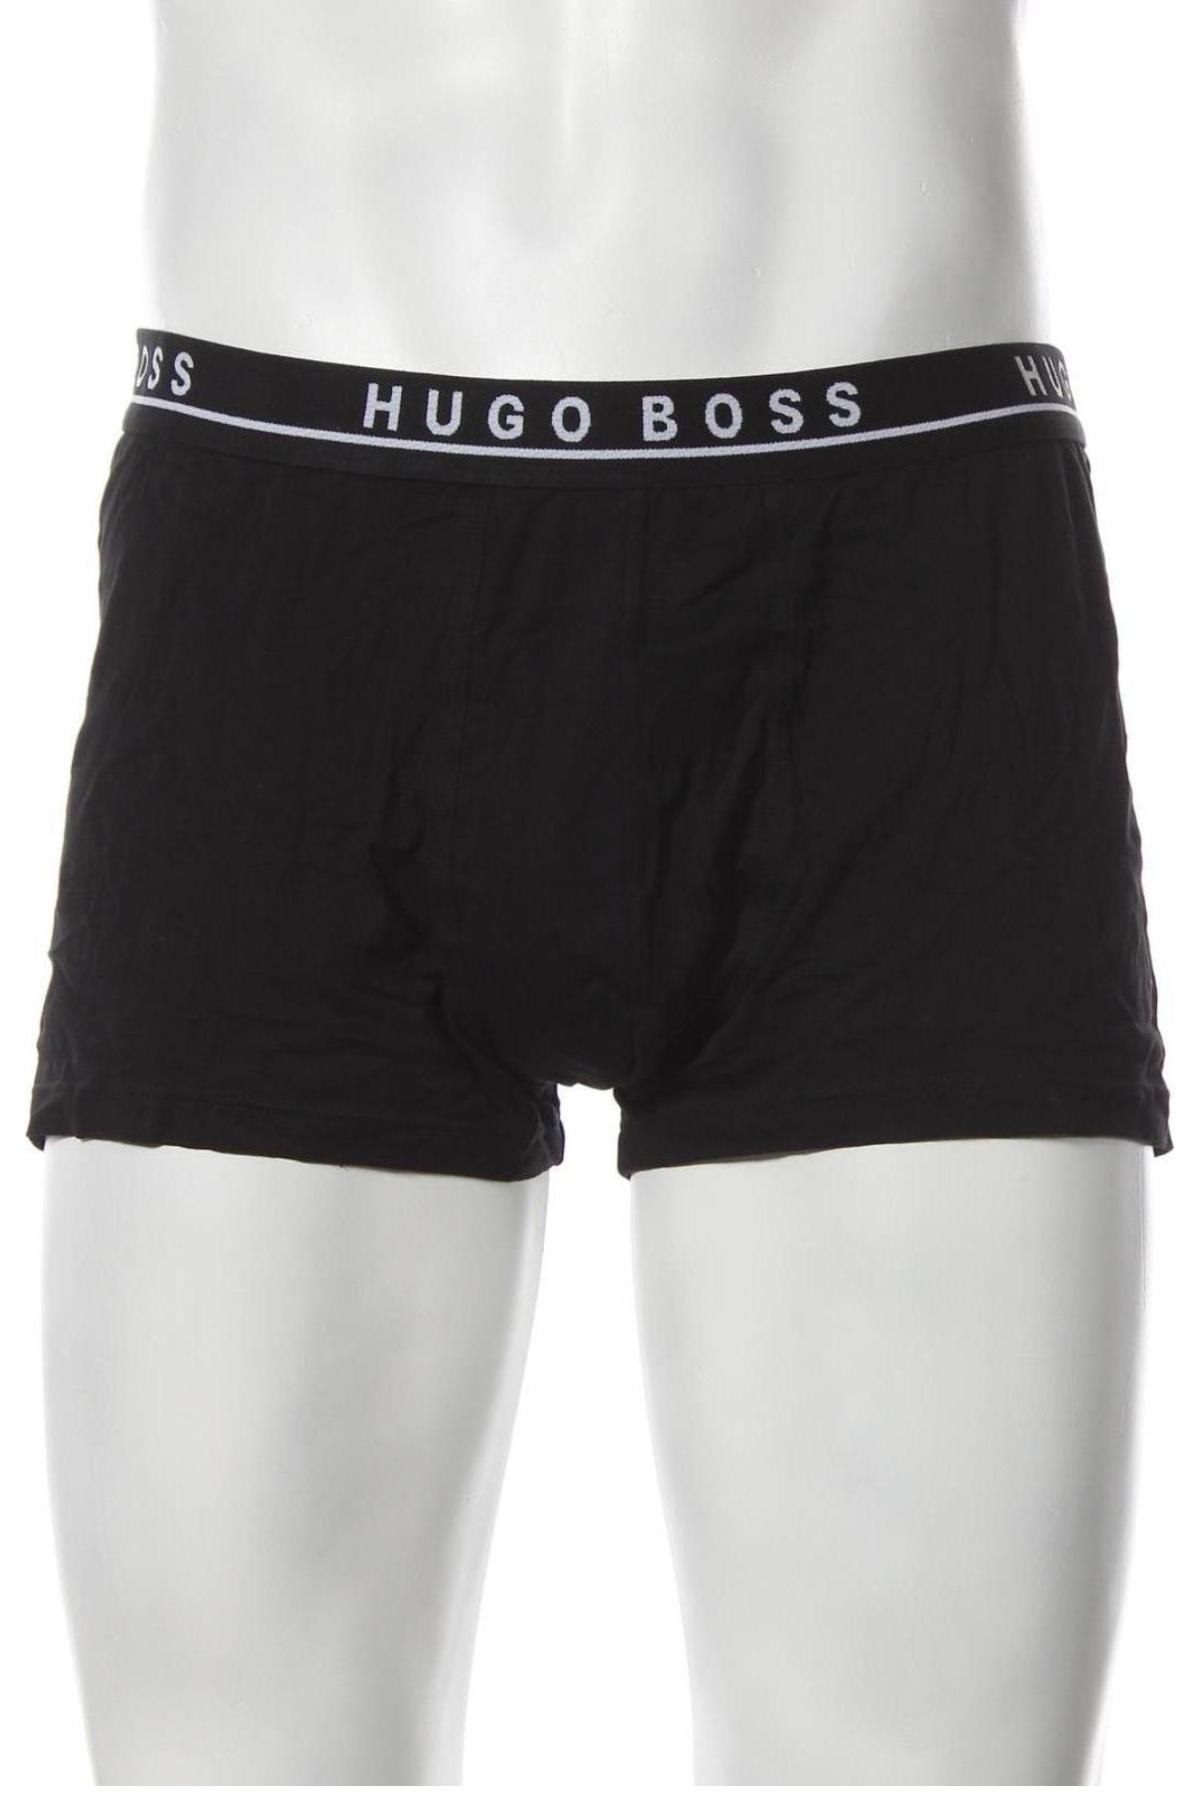 Ανδρικό σύνολο Hugo Boss, Μέγεθος XXL, Χρώμα Λευκό, 95% βαμβάκι, 5% ελαστάνη, Τιμή 49,87 €